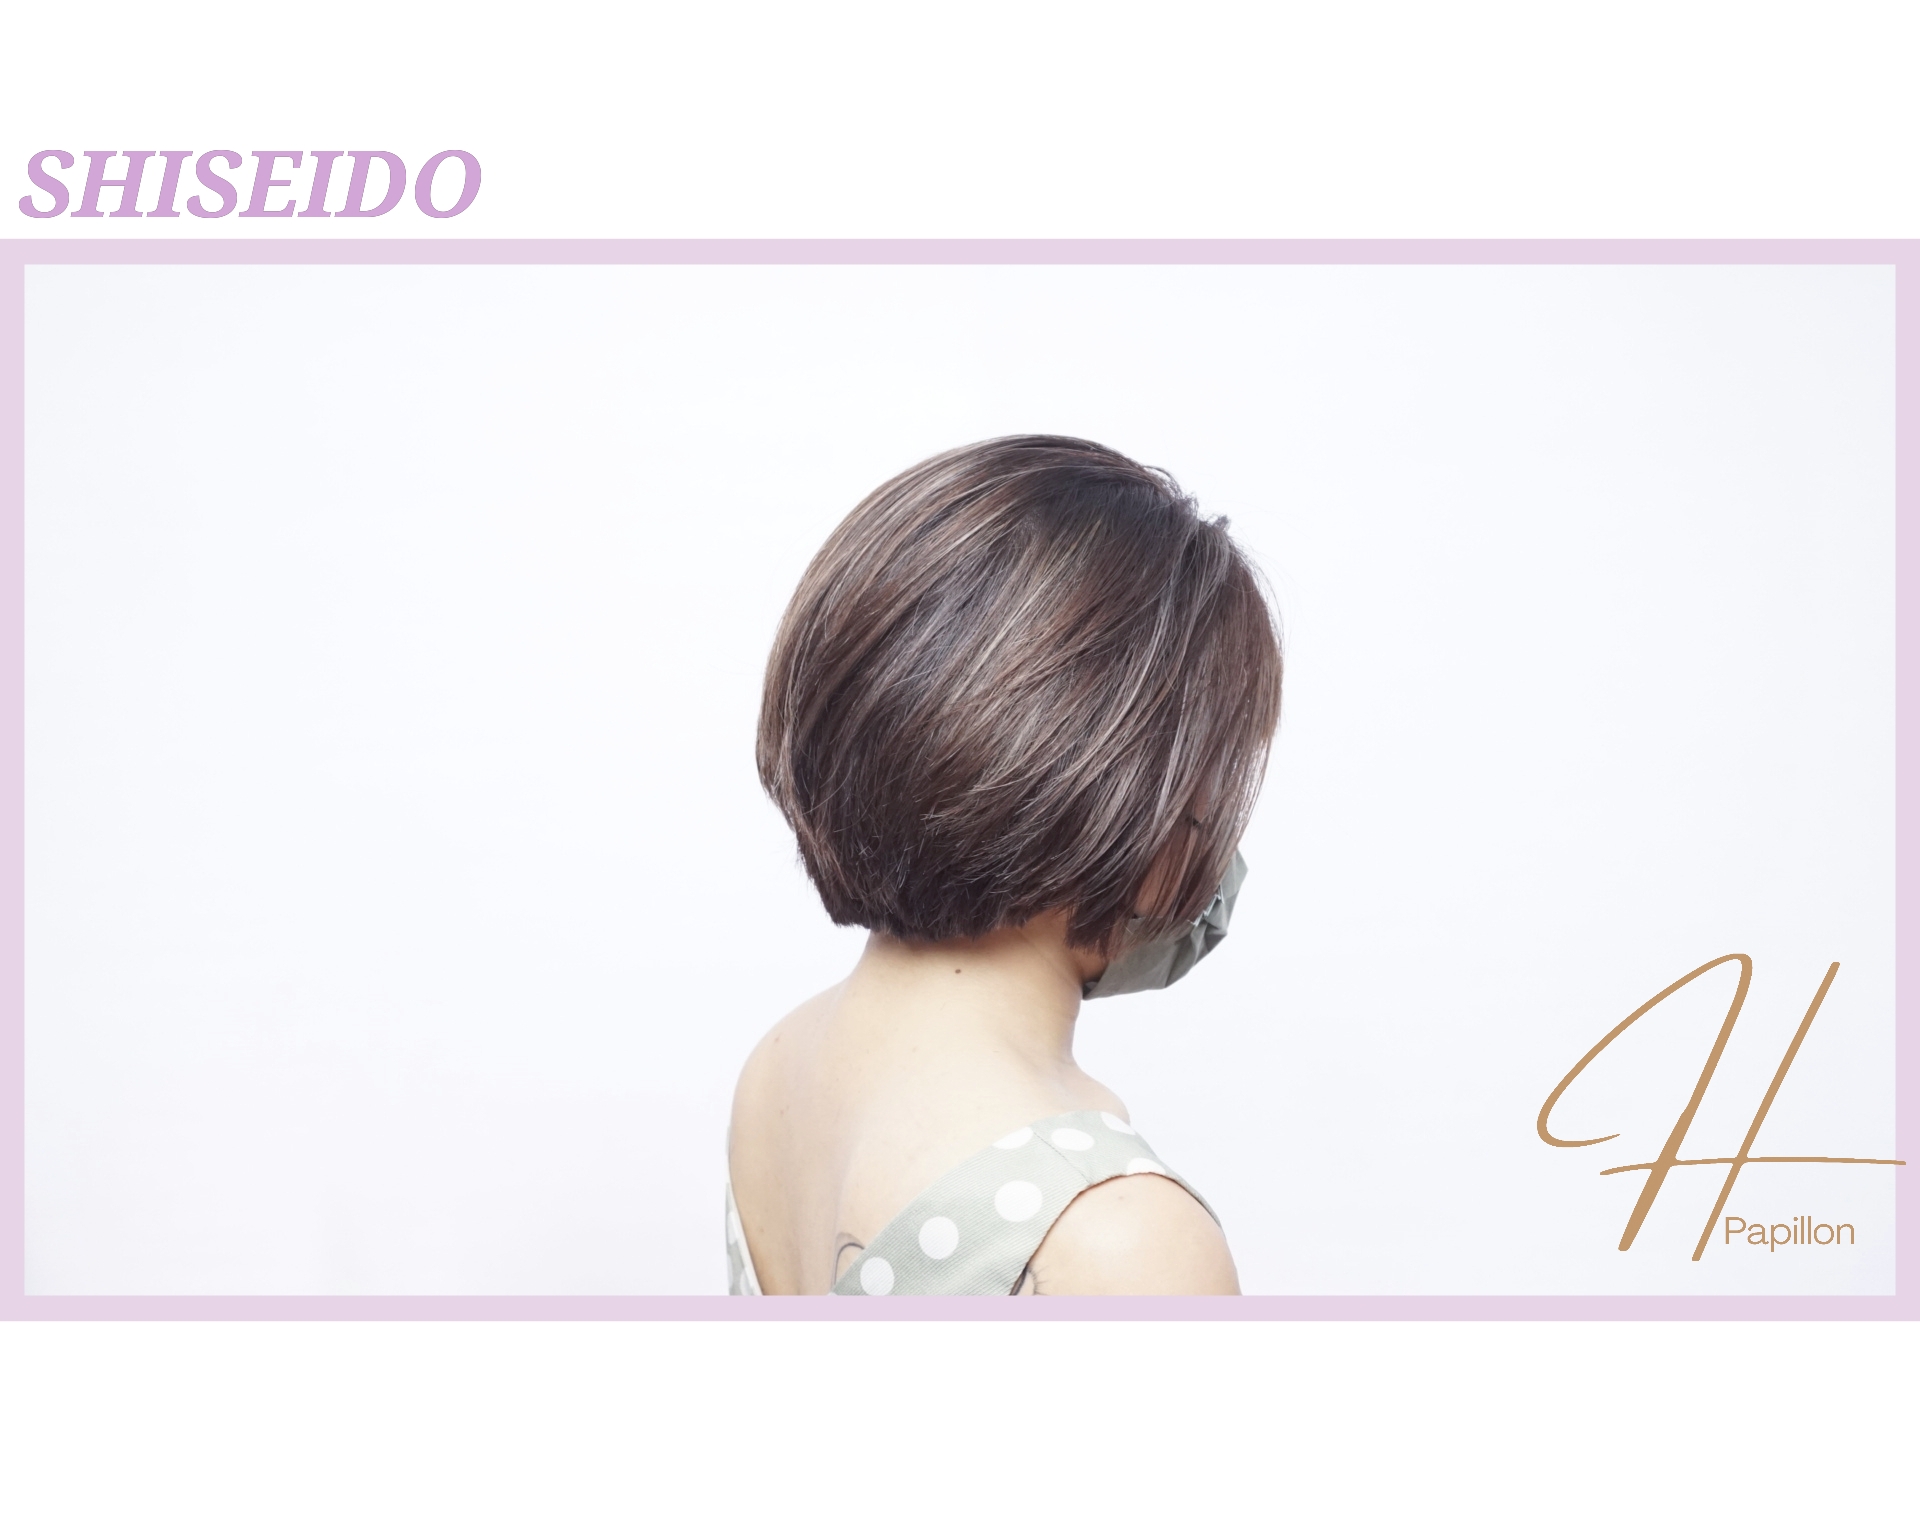 髮型作品参考:shiseido primience